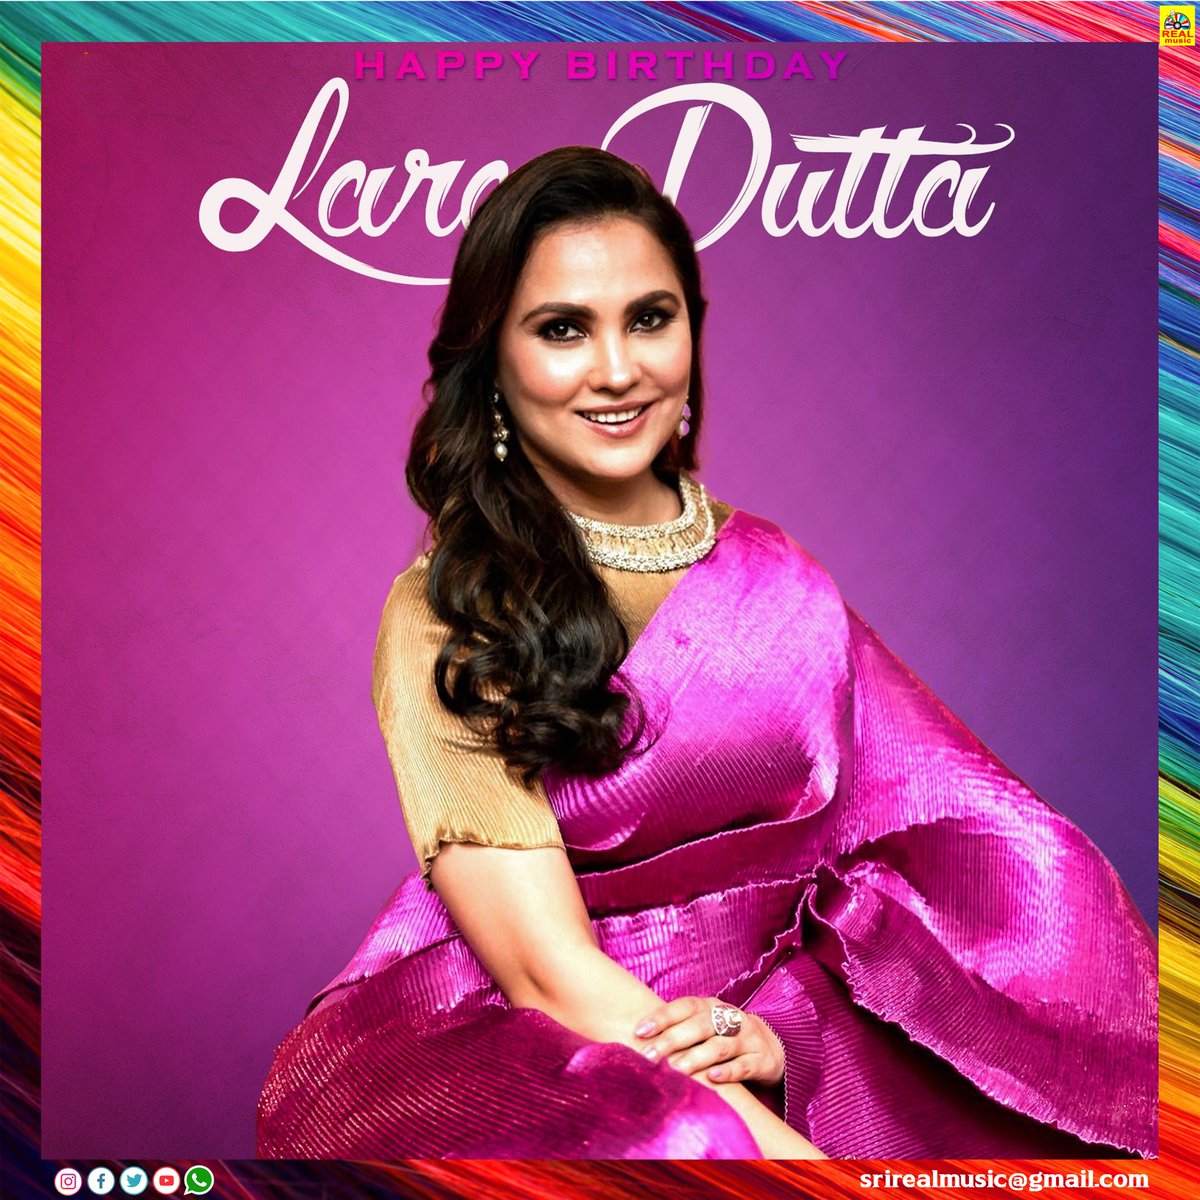 Happy Birthday Lara Dutta @LaraDutta
 #hbdlaradutta #laraduttabirthday #laradutta #realcinemas2007